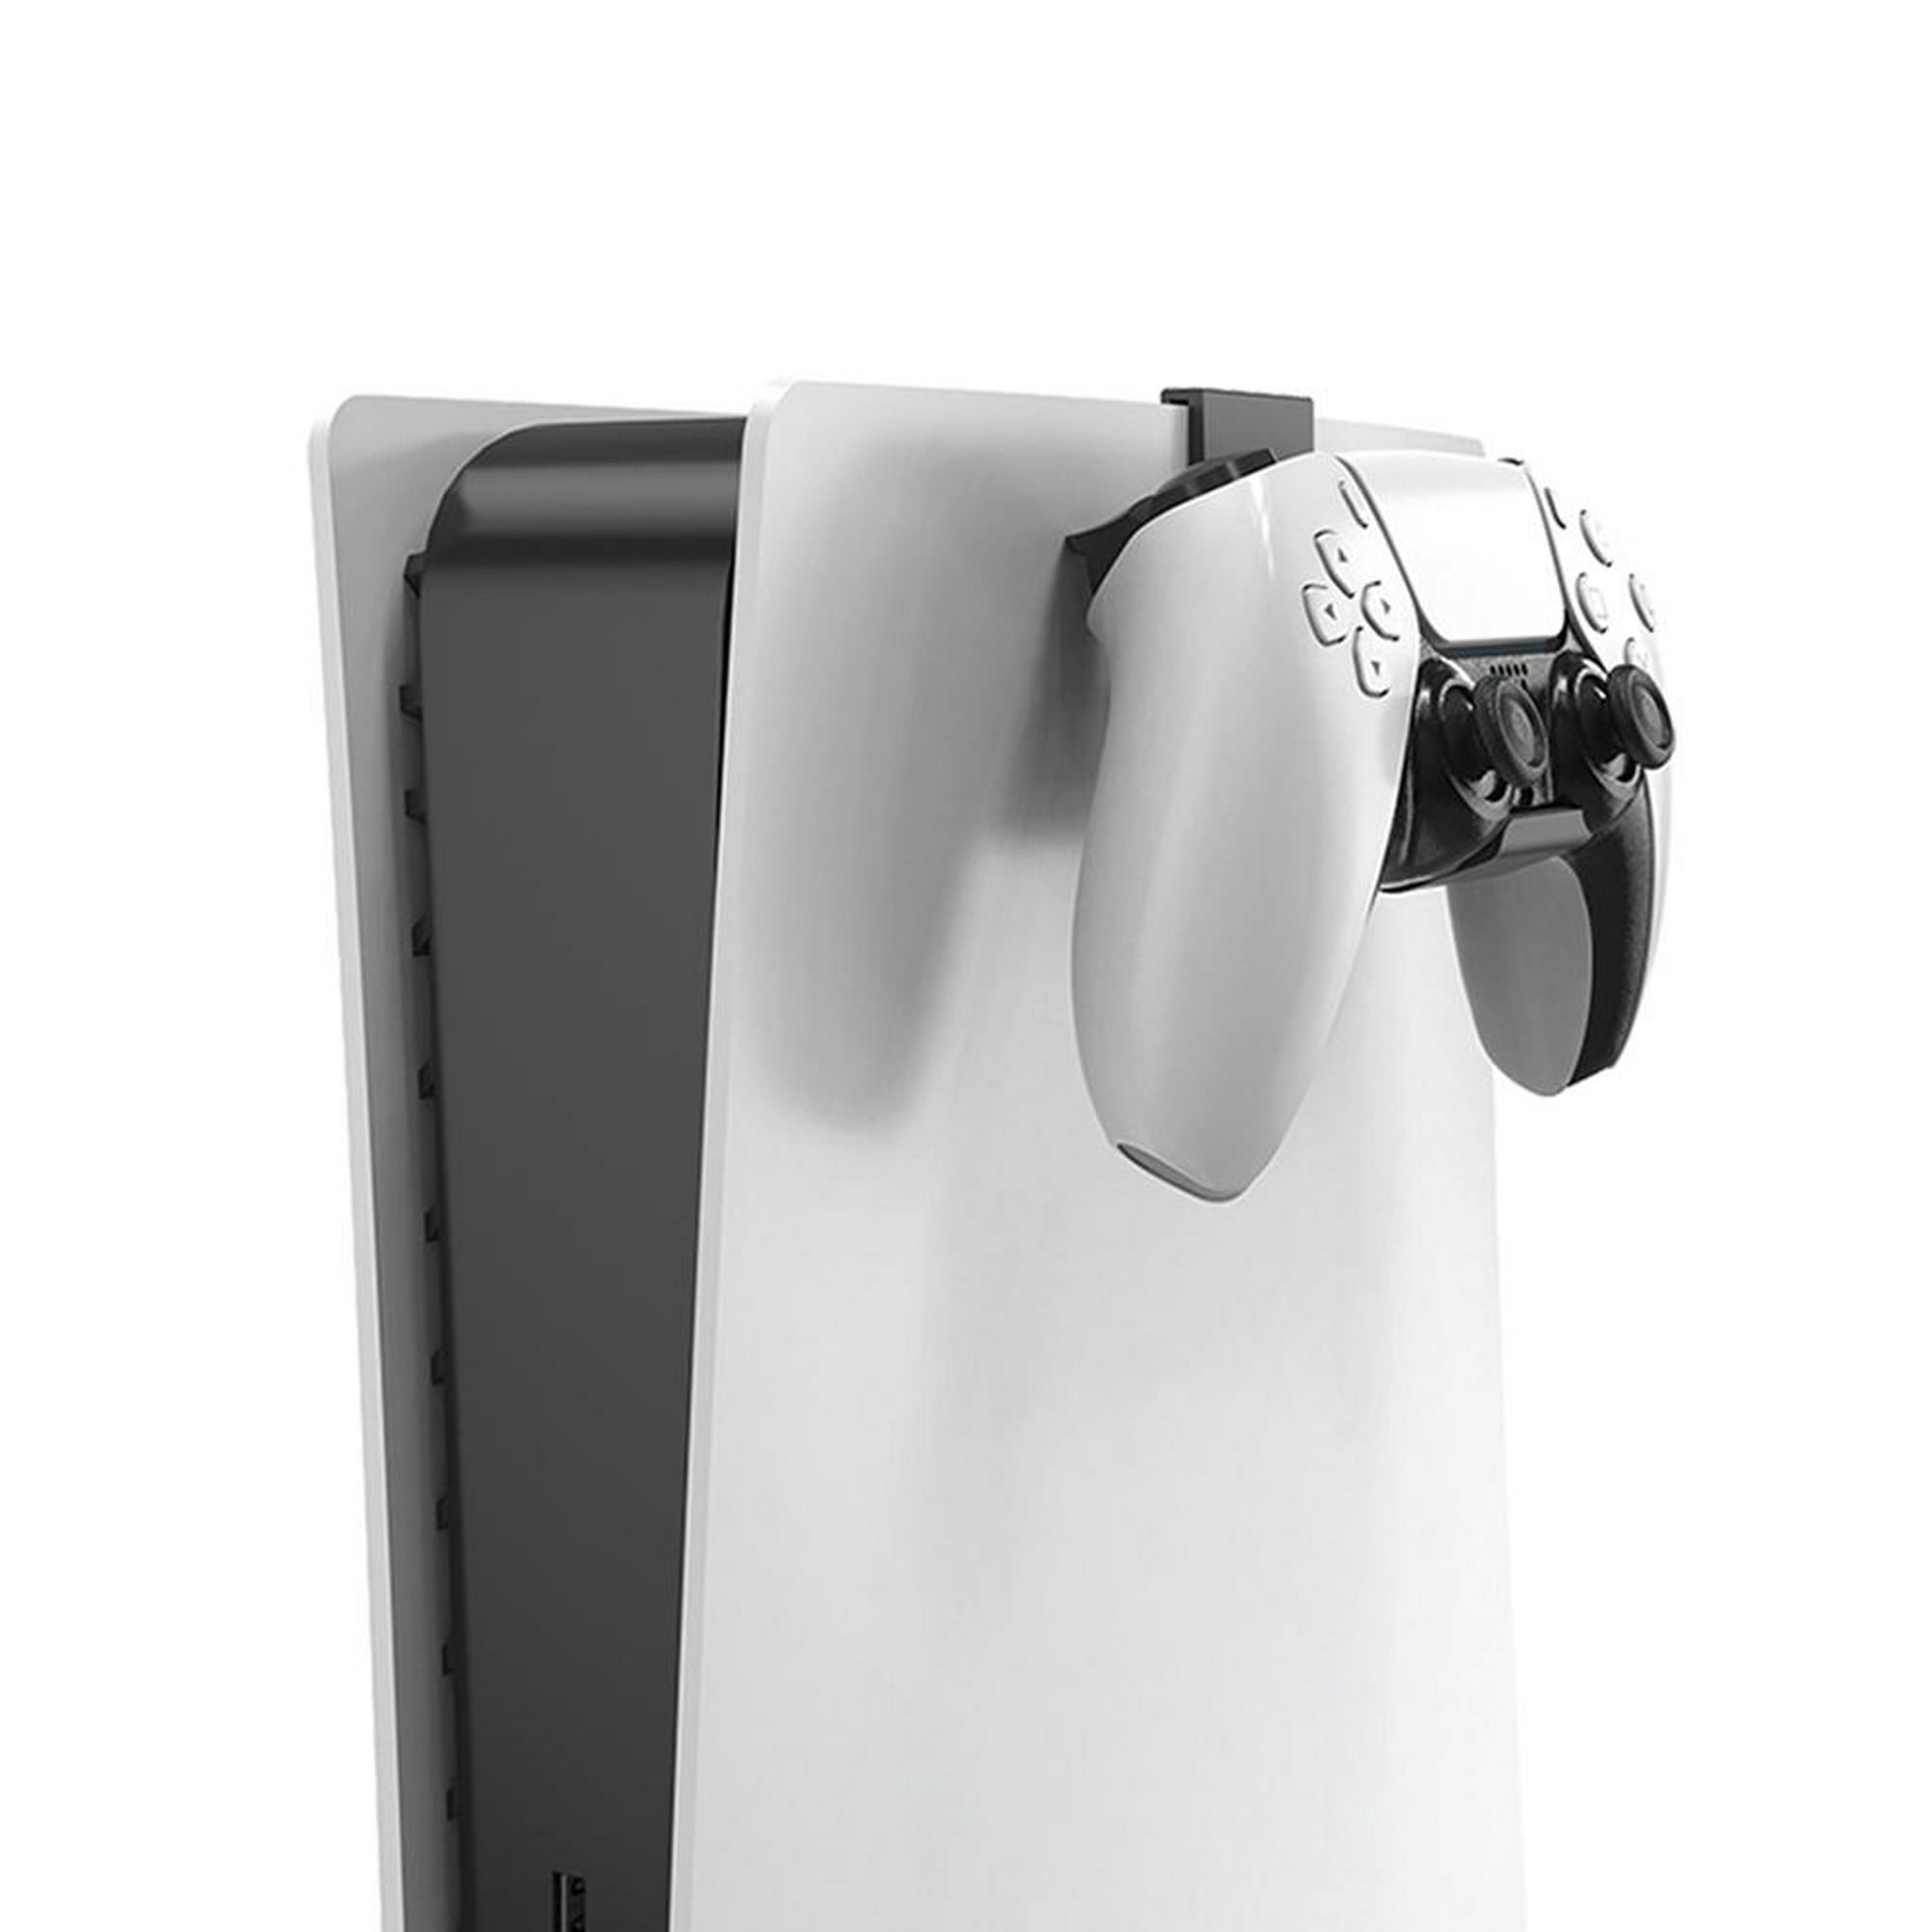 Soporte para auriculares para consola PS5, soporte para colgar auriculares  para juegos Soporte de gancho para auriculares para PS5